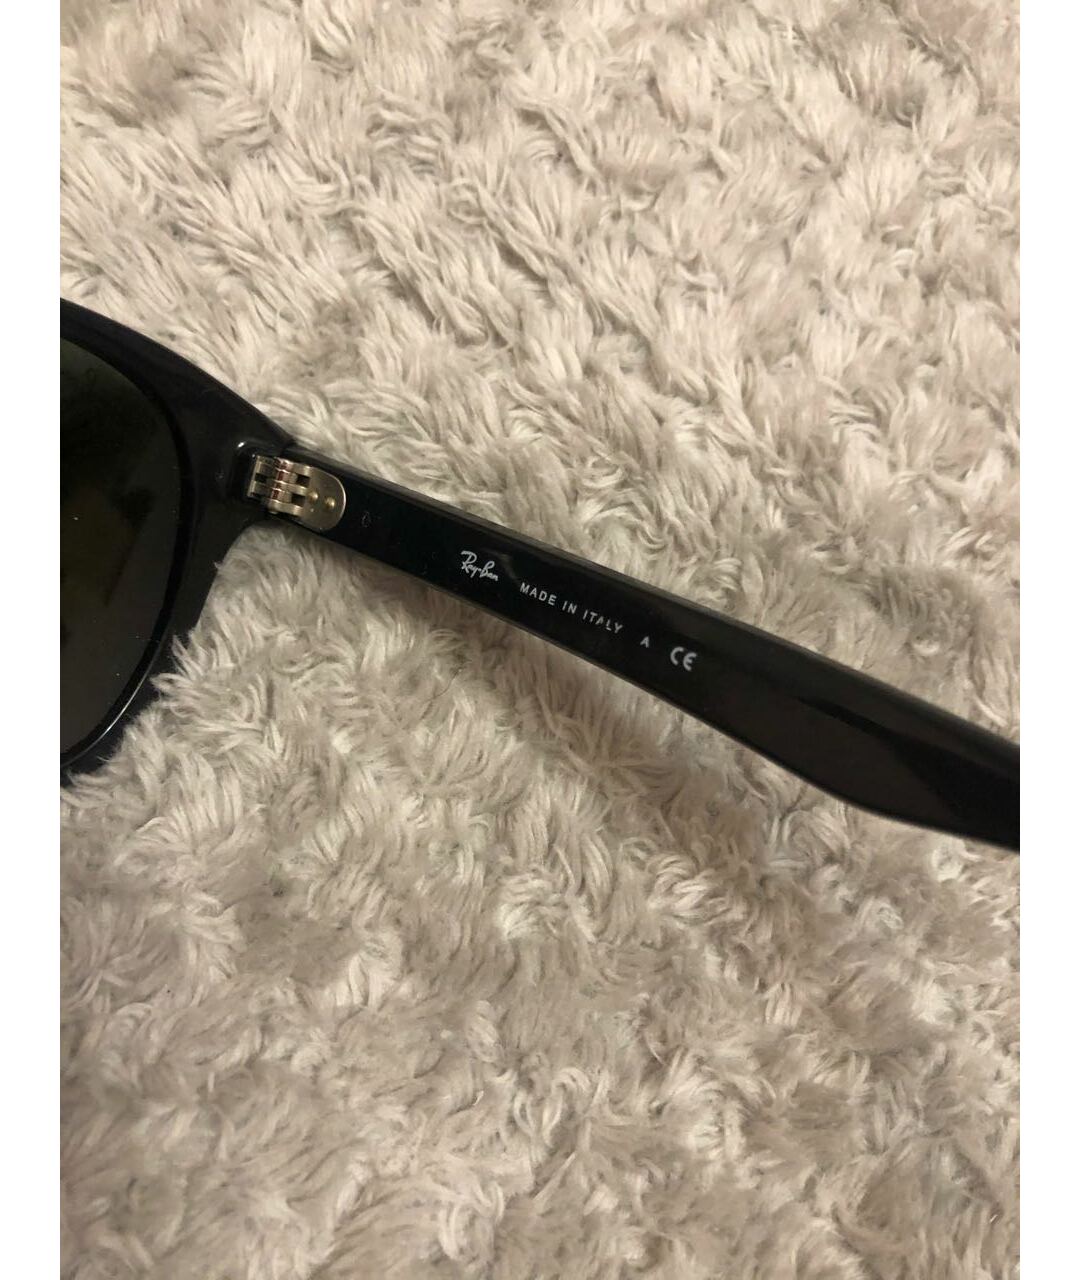 RAY BAN Черные пластиковые солнцезащитные очки, фото 5